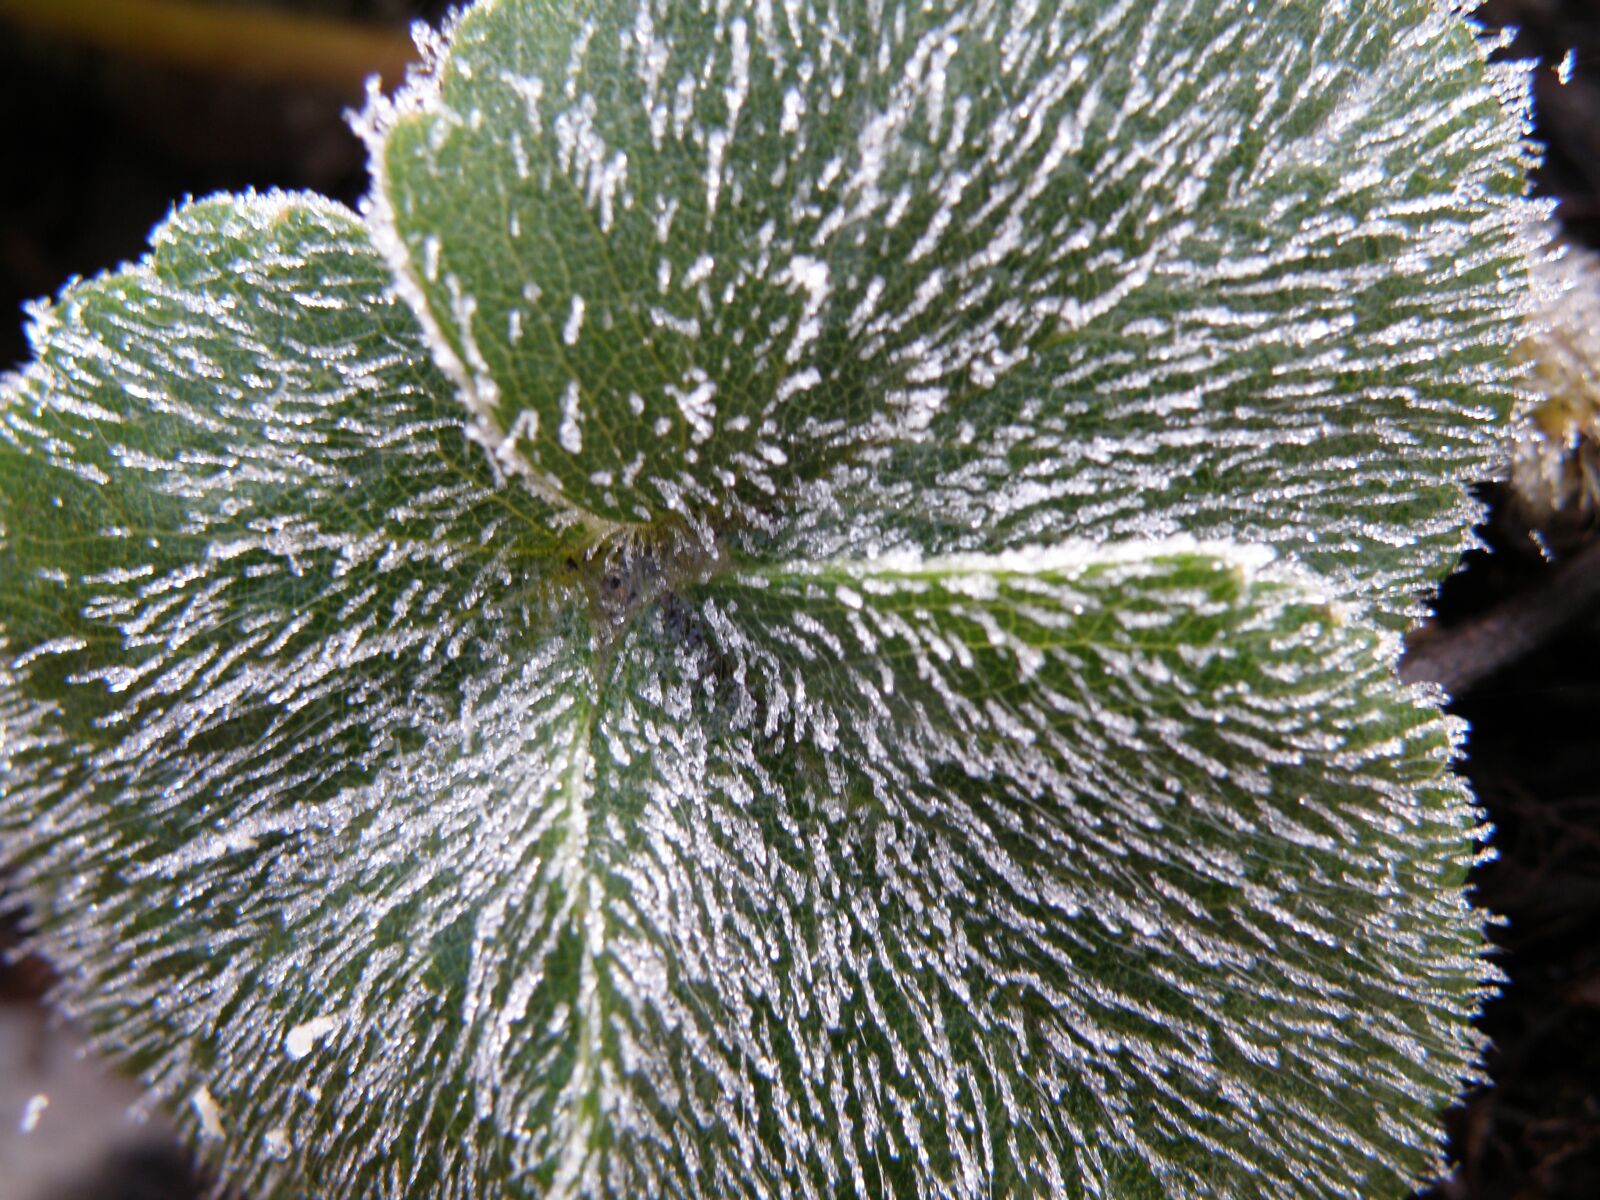 Olympus SP-565UZ sample photo. Plant, ice, nature photography